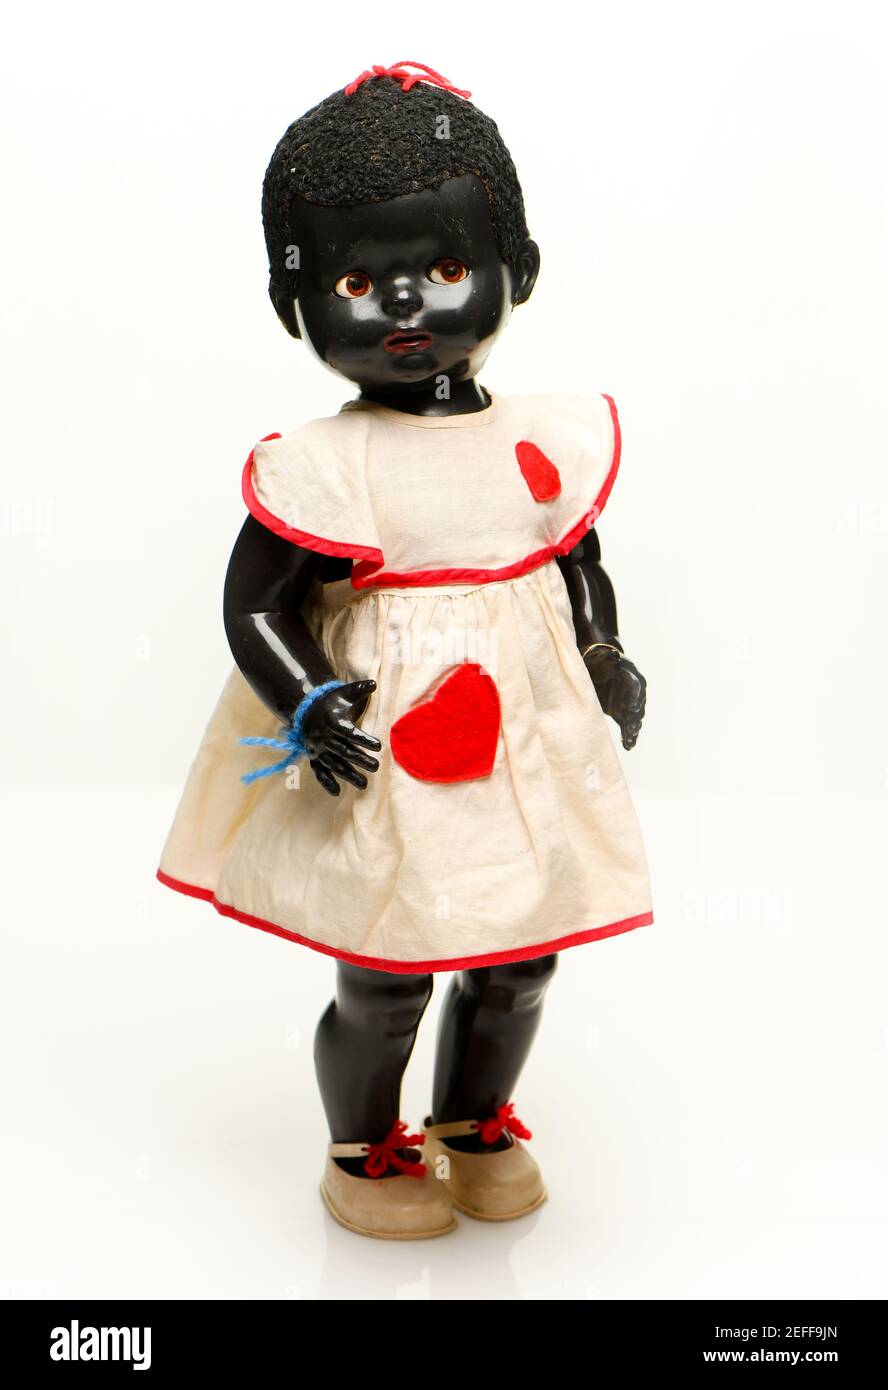 Antike Kinder-Ahnentafel schwarze Puppe aus dem frühen 50s ursprünglich in Guernsey Channel Inseln gekauft. Stockfoto